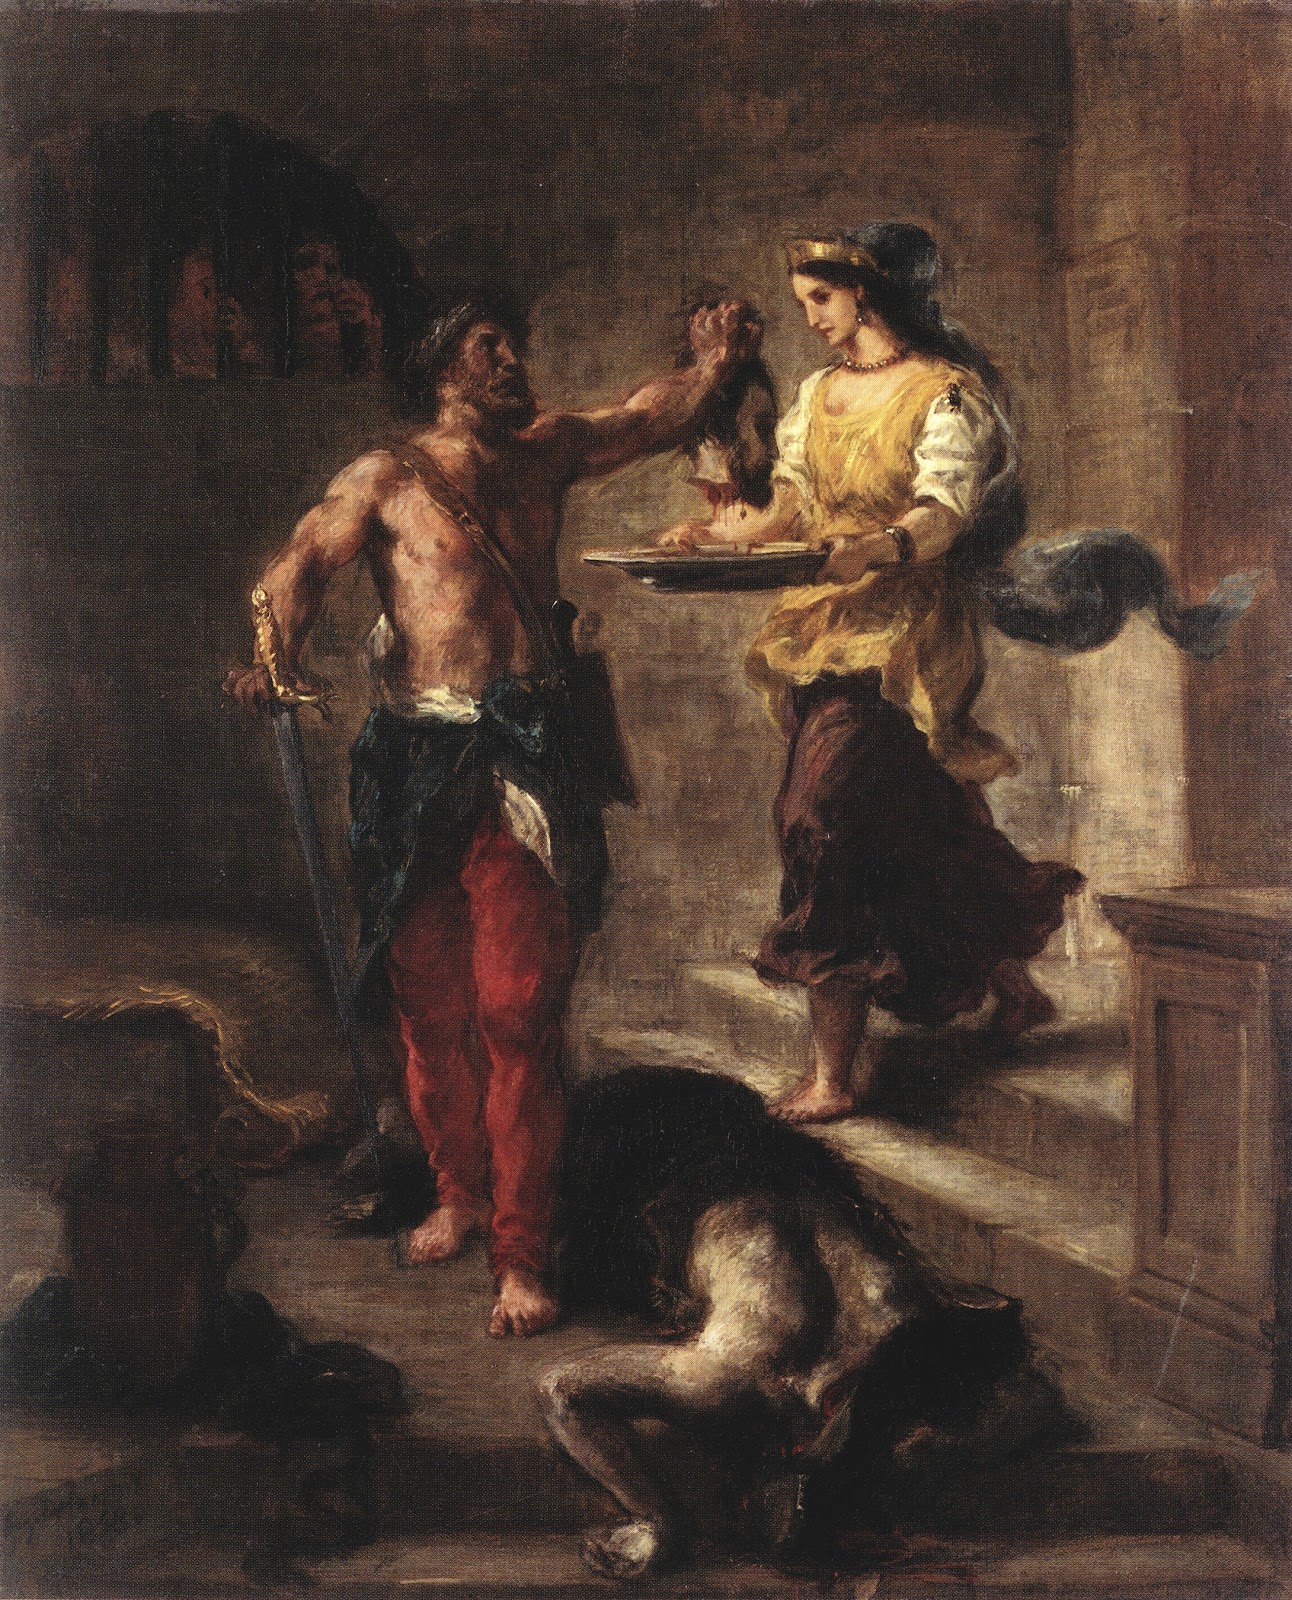 Eugene+Delacroix-1798-1863 (209).jpg